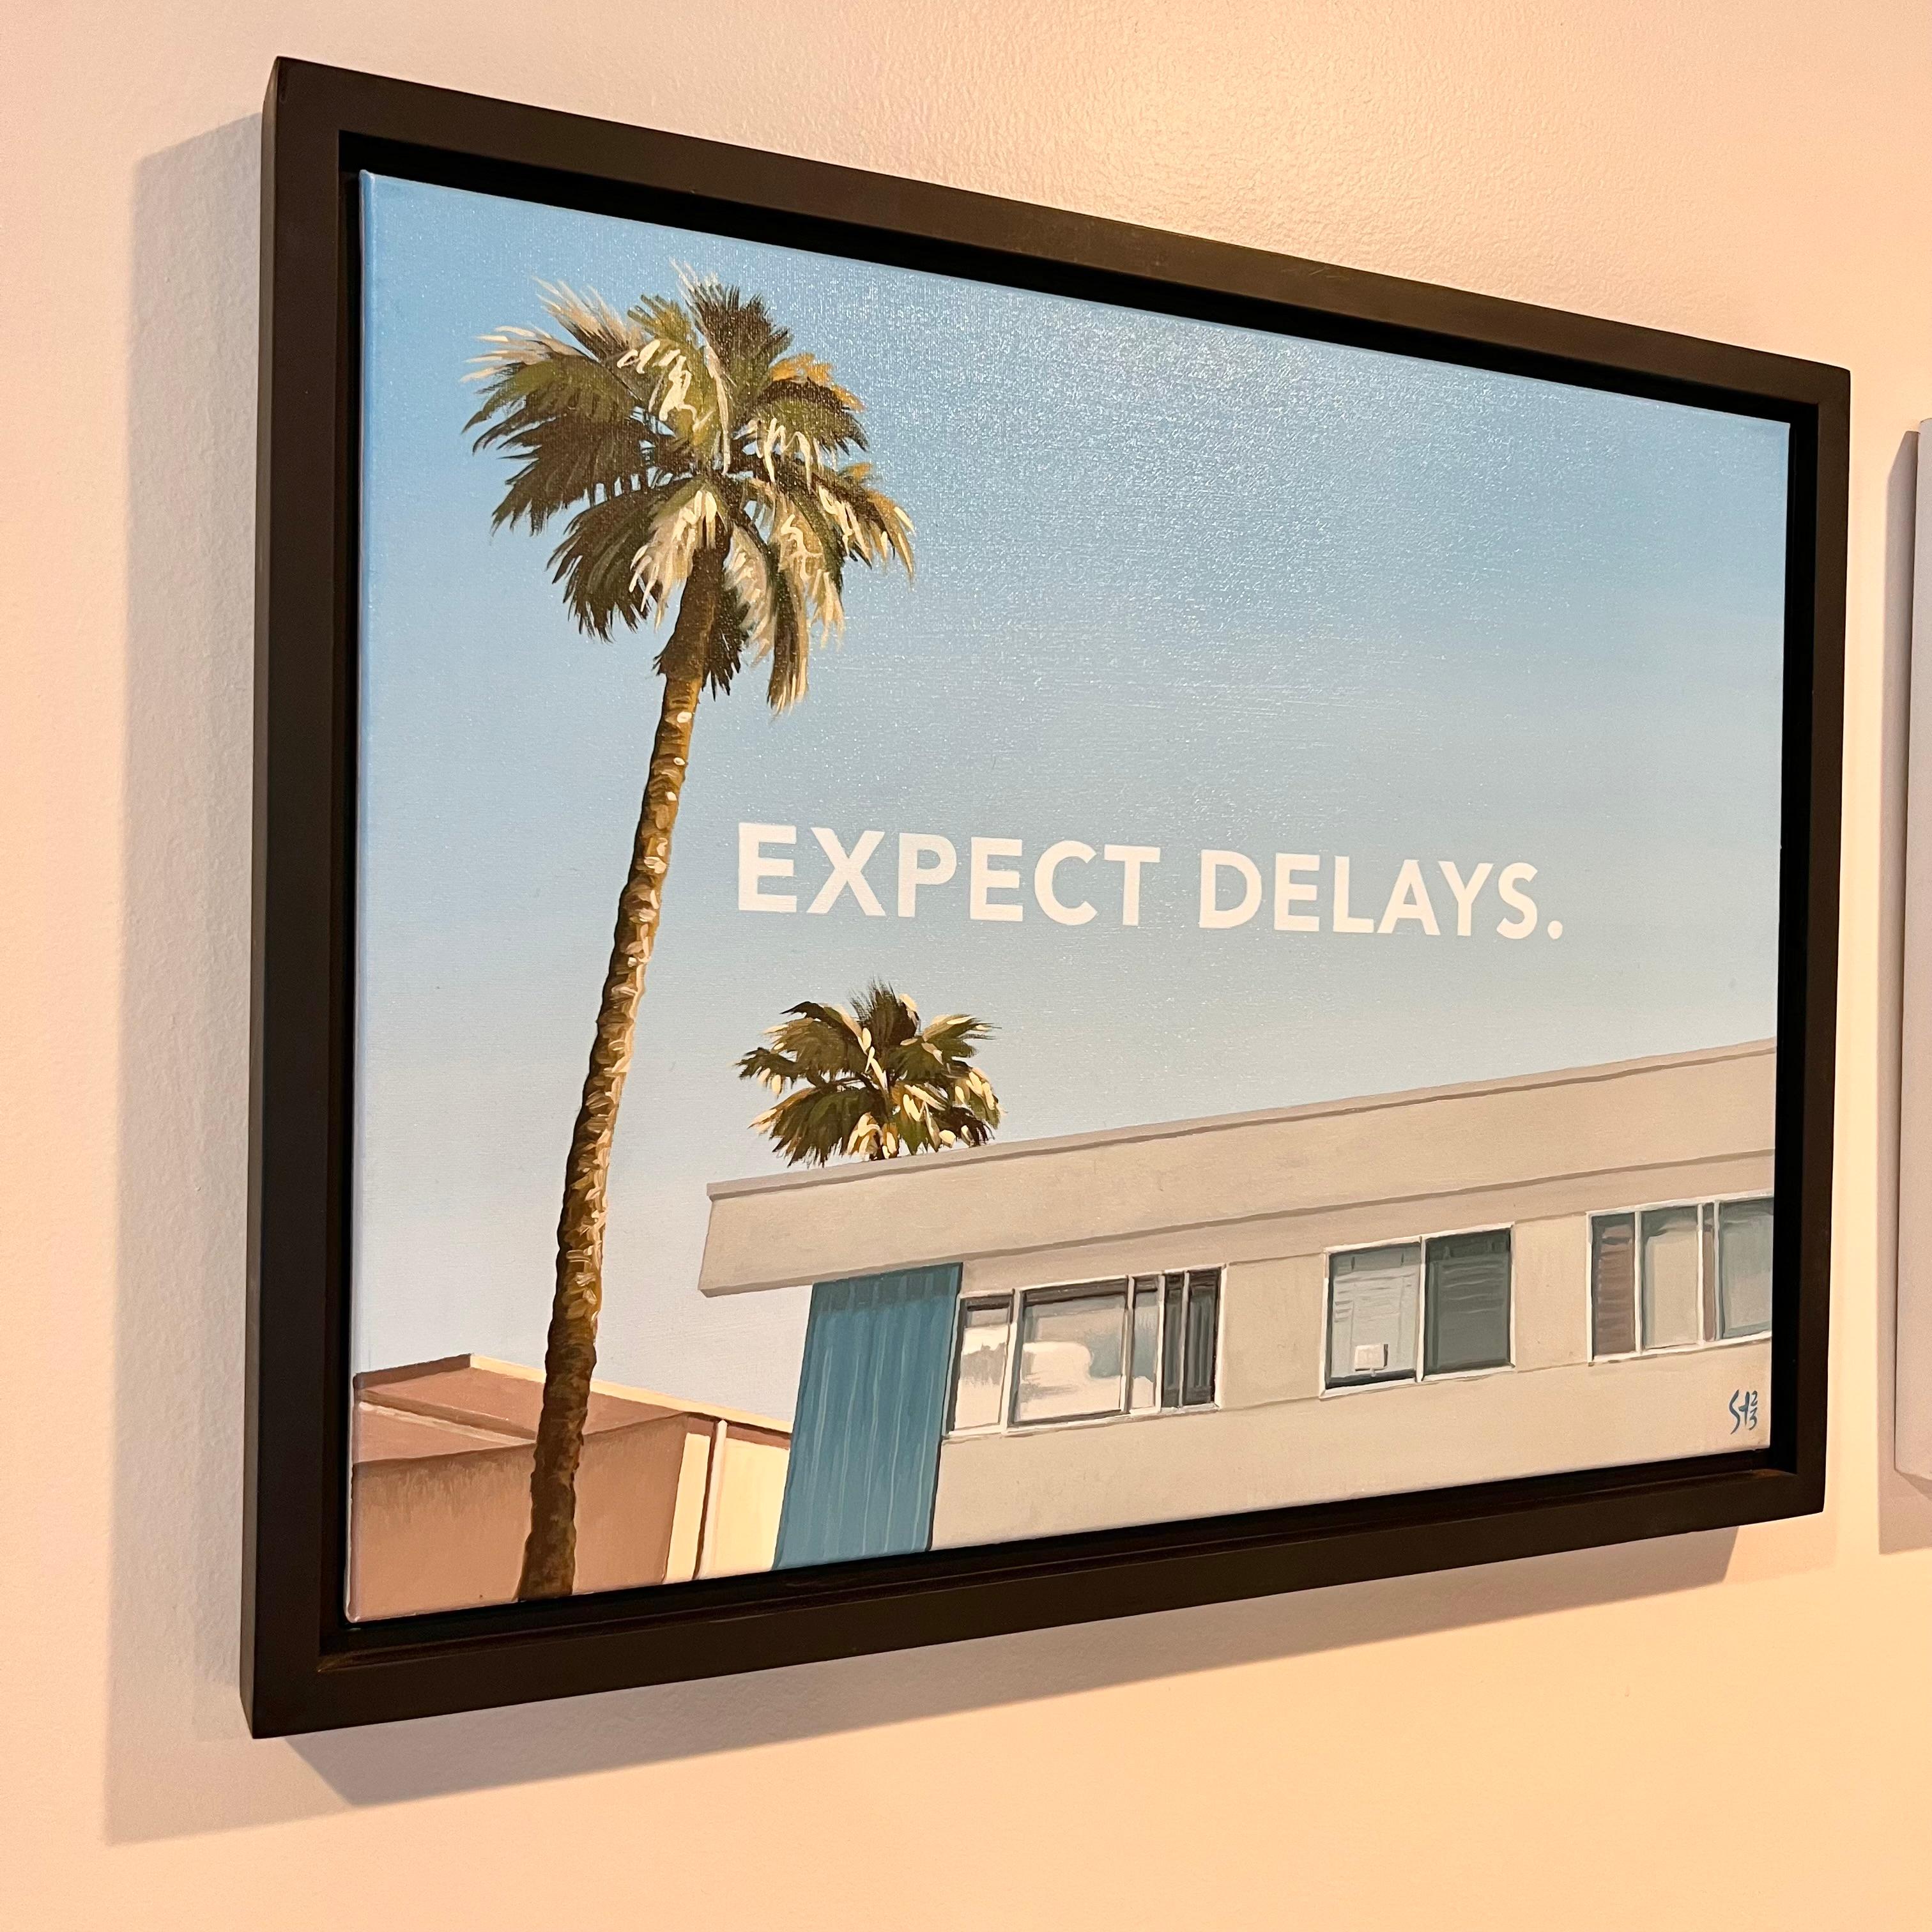 Peinture originale à l'huile sur toile de type Pop Art réalisée par un artiste local de Los Angeles. Évocation des œuvres d'Ed Ruscha. Paysage typique de Los Angeles : complexe d'appartements datant d'avant les années 1970, palmiers et ciel bleu.